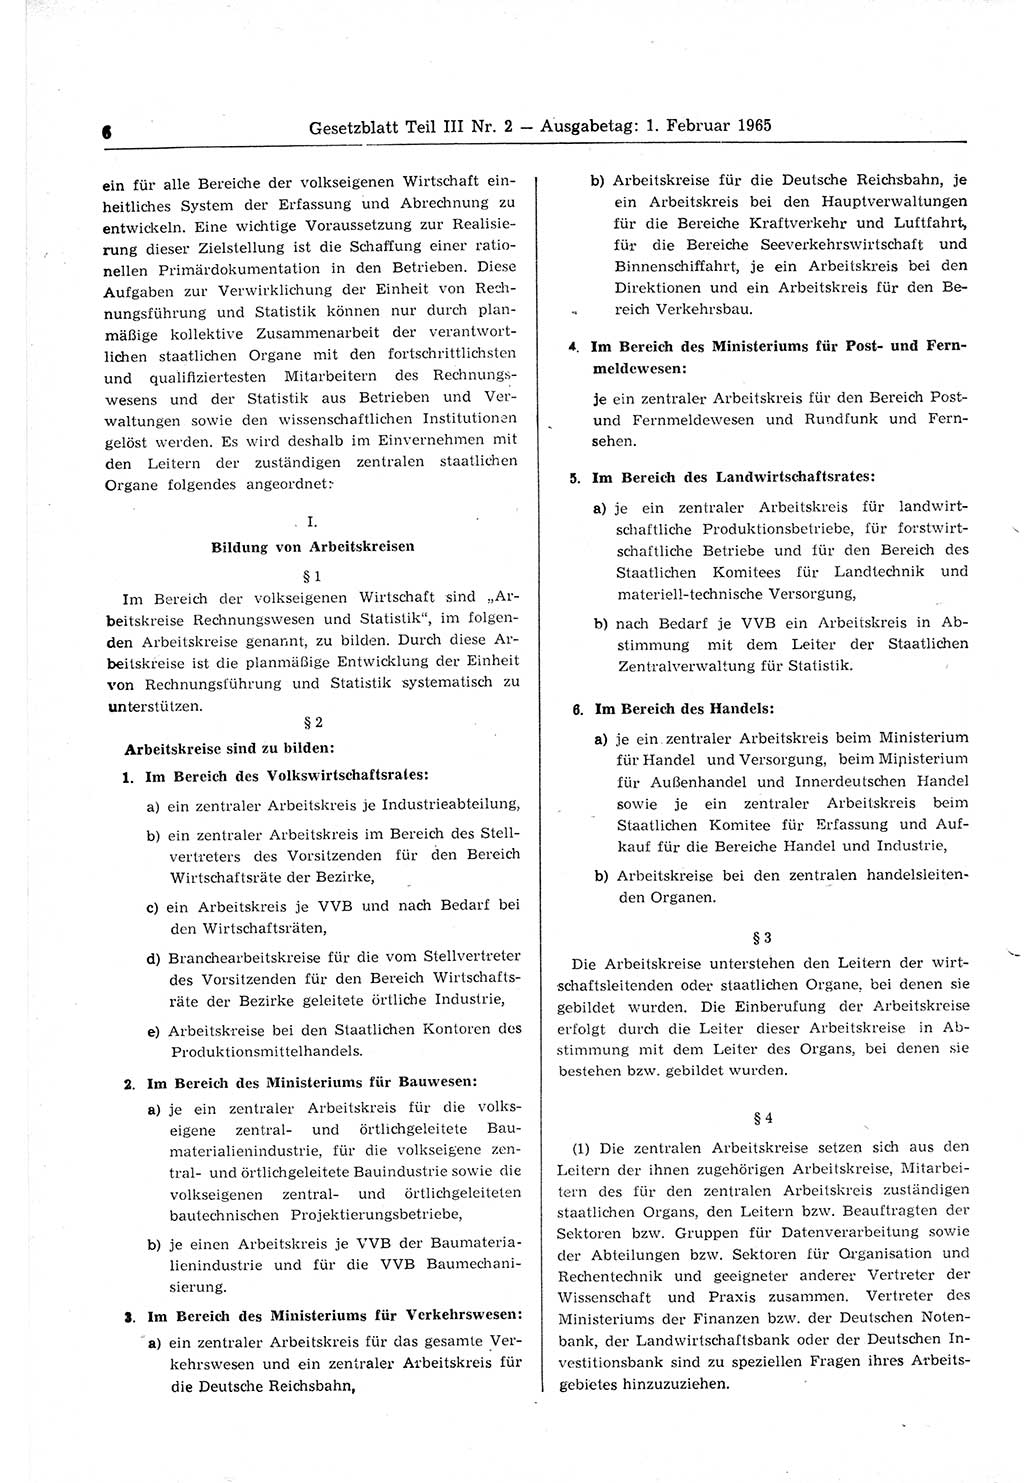 Gesetzblatt (GBl.) der Deutschen Demokratischen Republik (DDR) Teil ⅠⅠⅠ 1965, Seite 6 (GBl. DDR ⅠⅠⅠ 1965, S. 6)